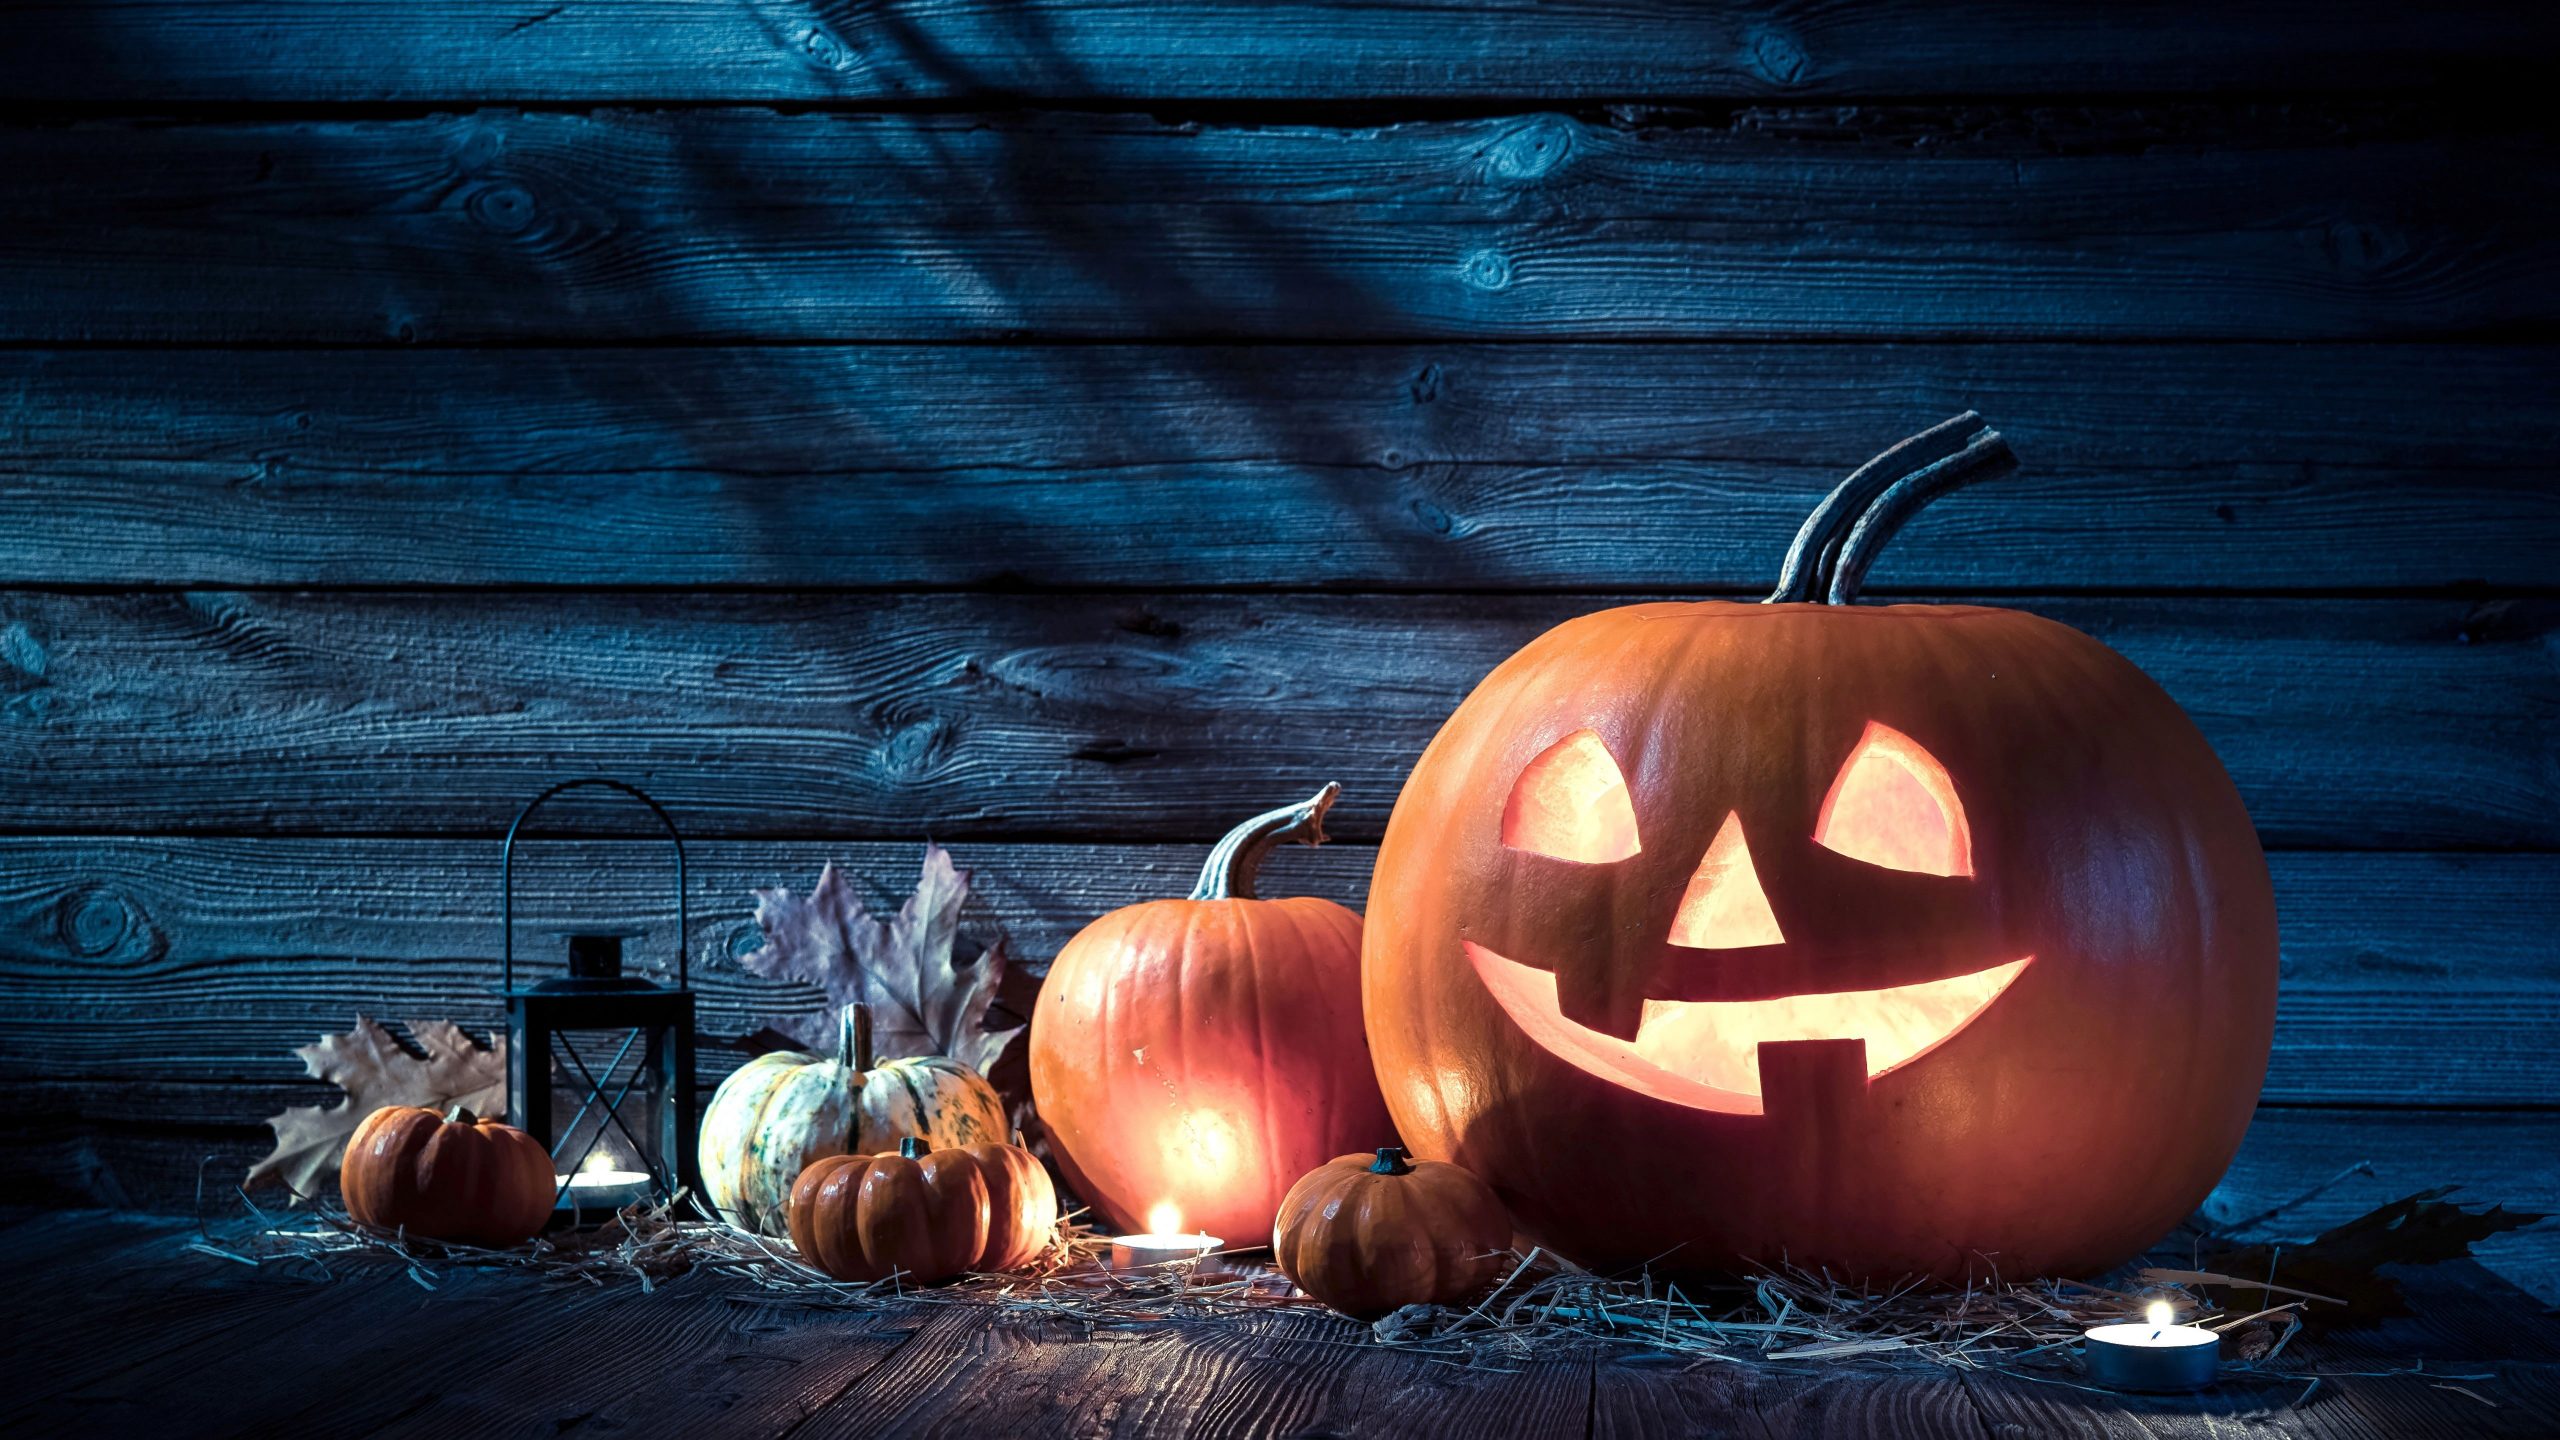 Wallpaper Halloween, Pumpkin, 5k Uhd, Candlelight, Jack O